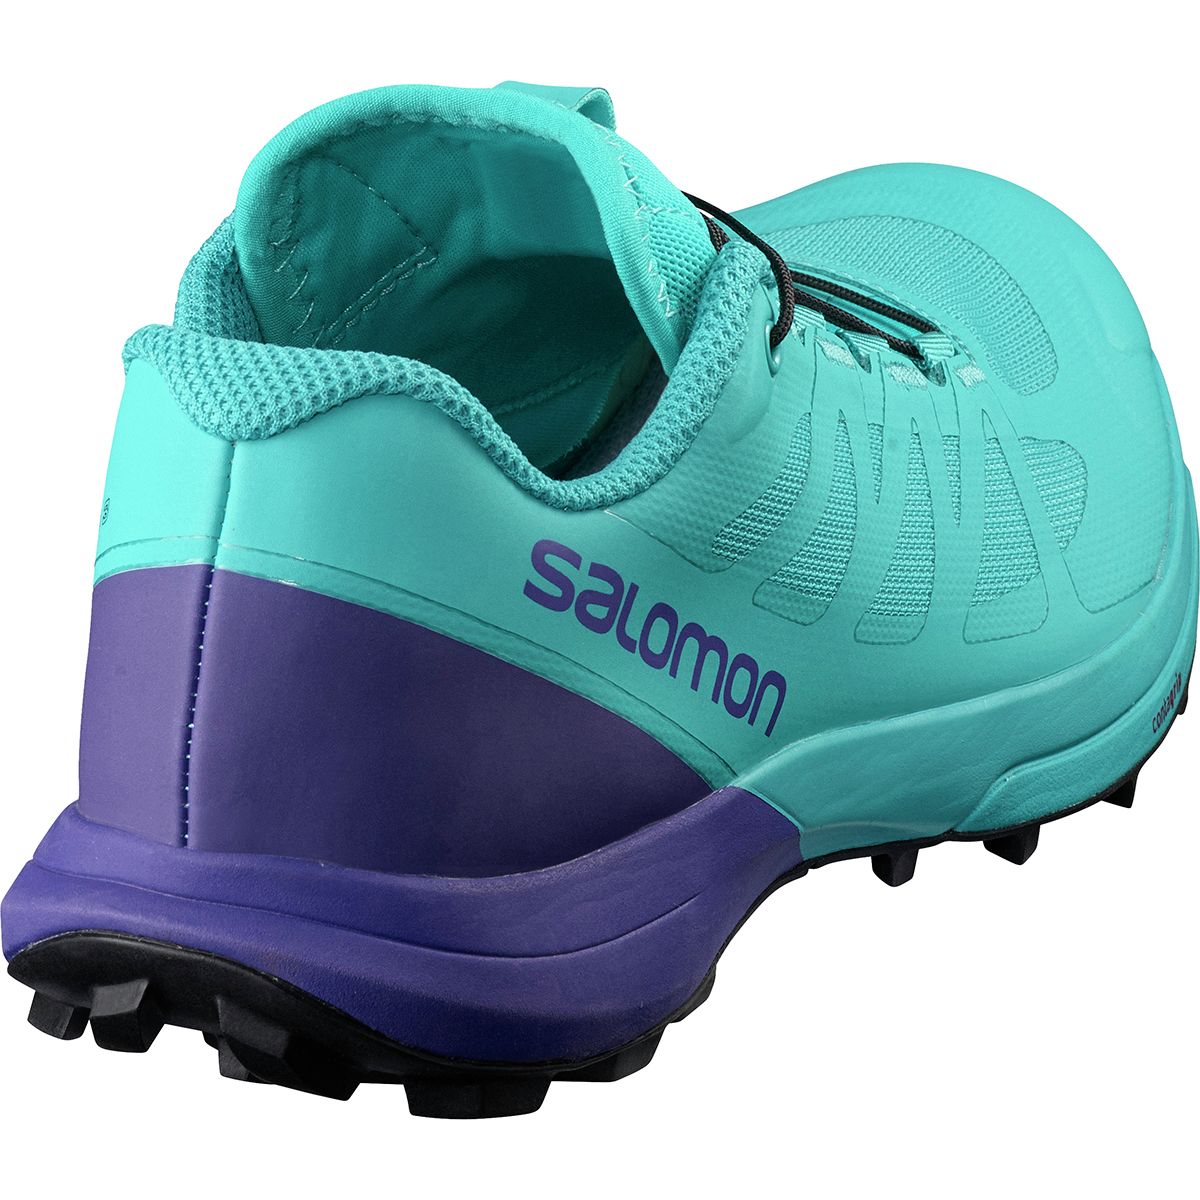 Salomon Sense Pro 3 Shoe Women's - Footwear